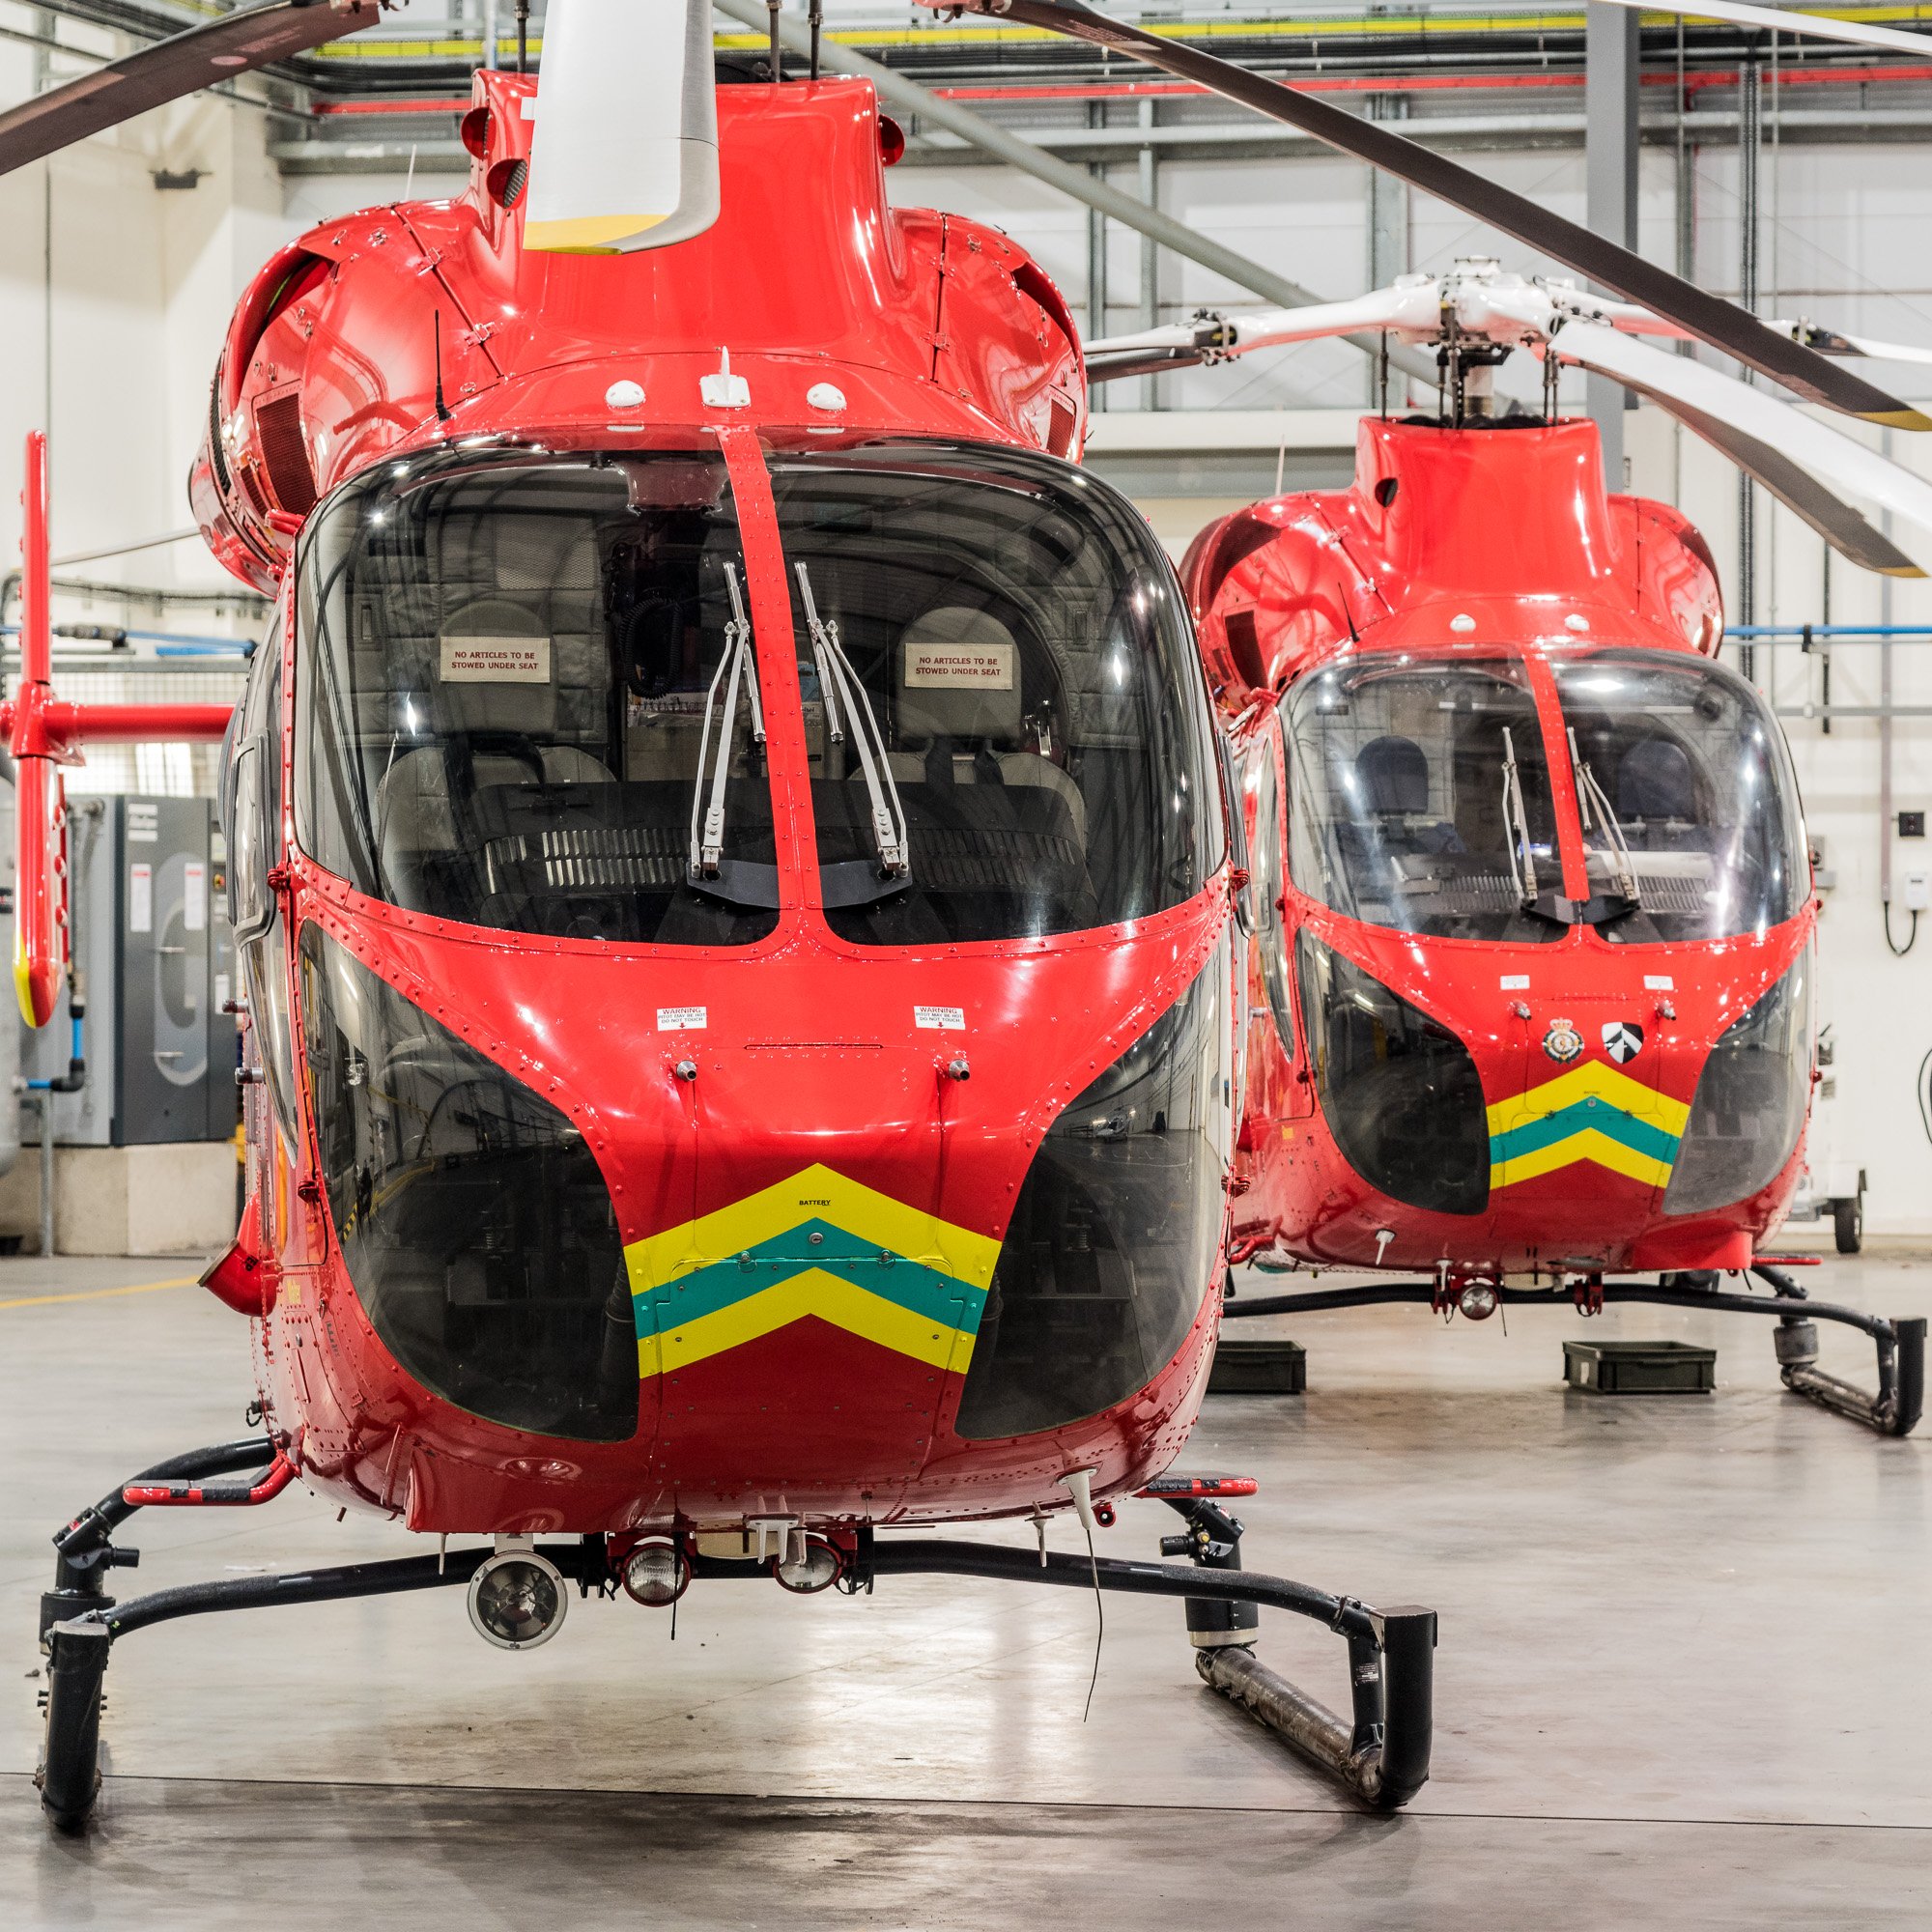 Two London Air Ambulances hangared at Northolt